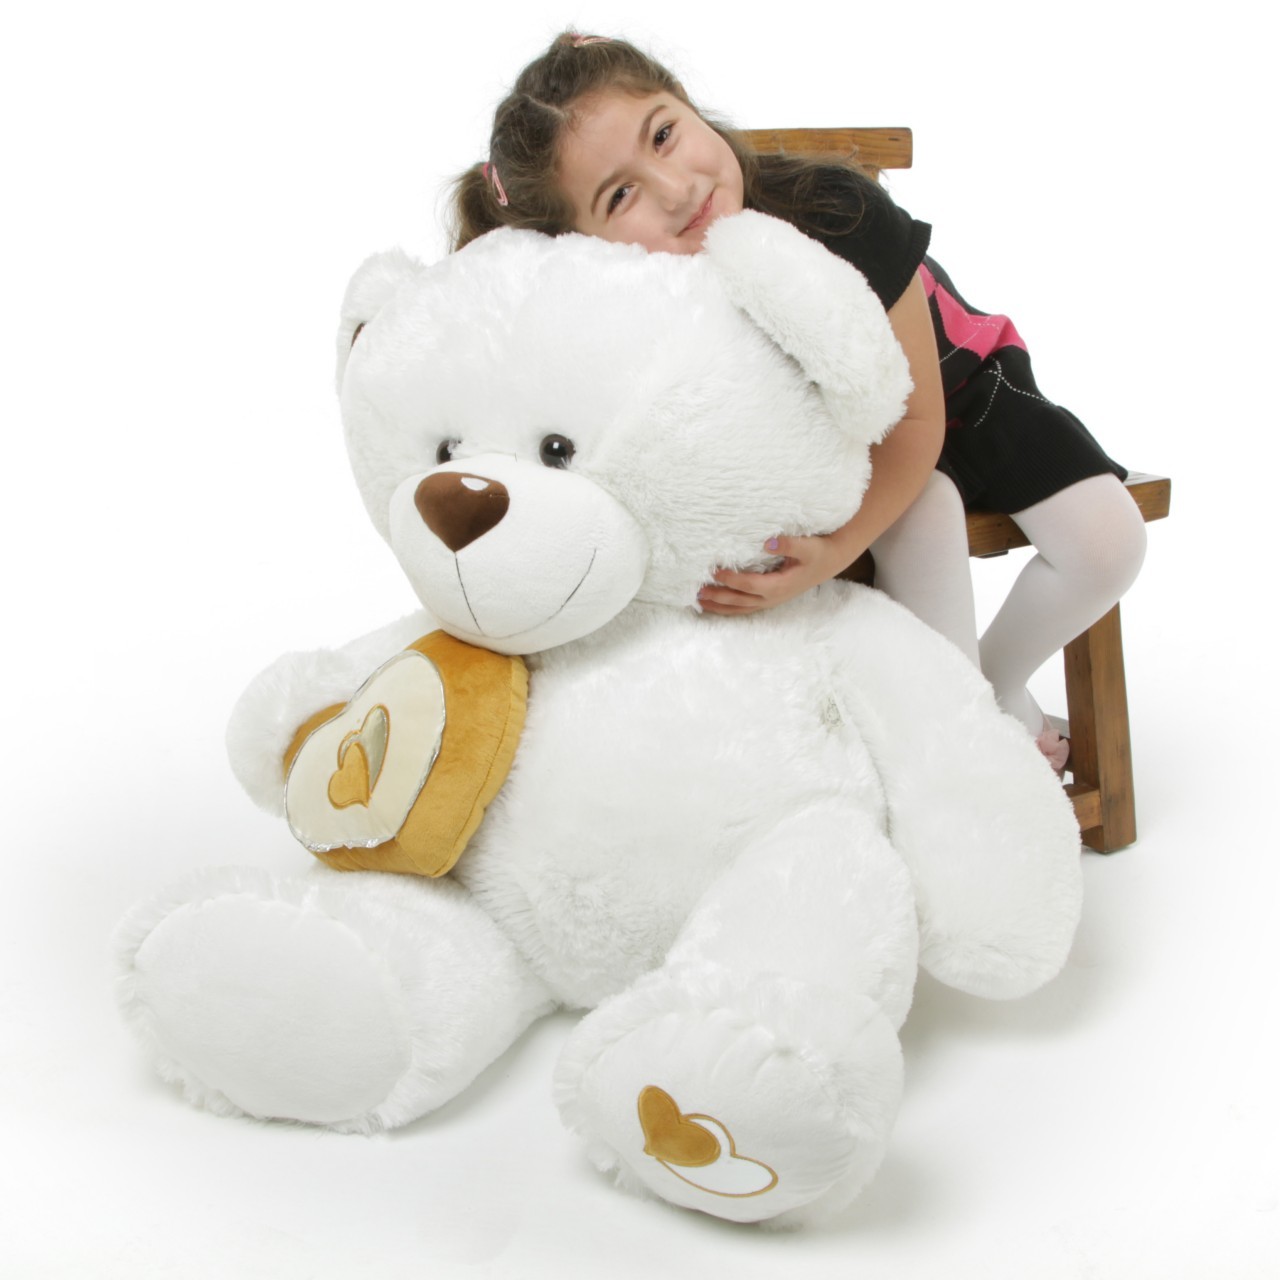 Big Teddy Bear Pics Download - 1280x1280 Wallpaper 